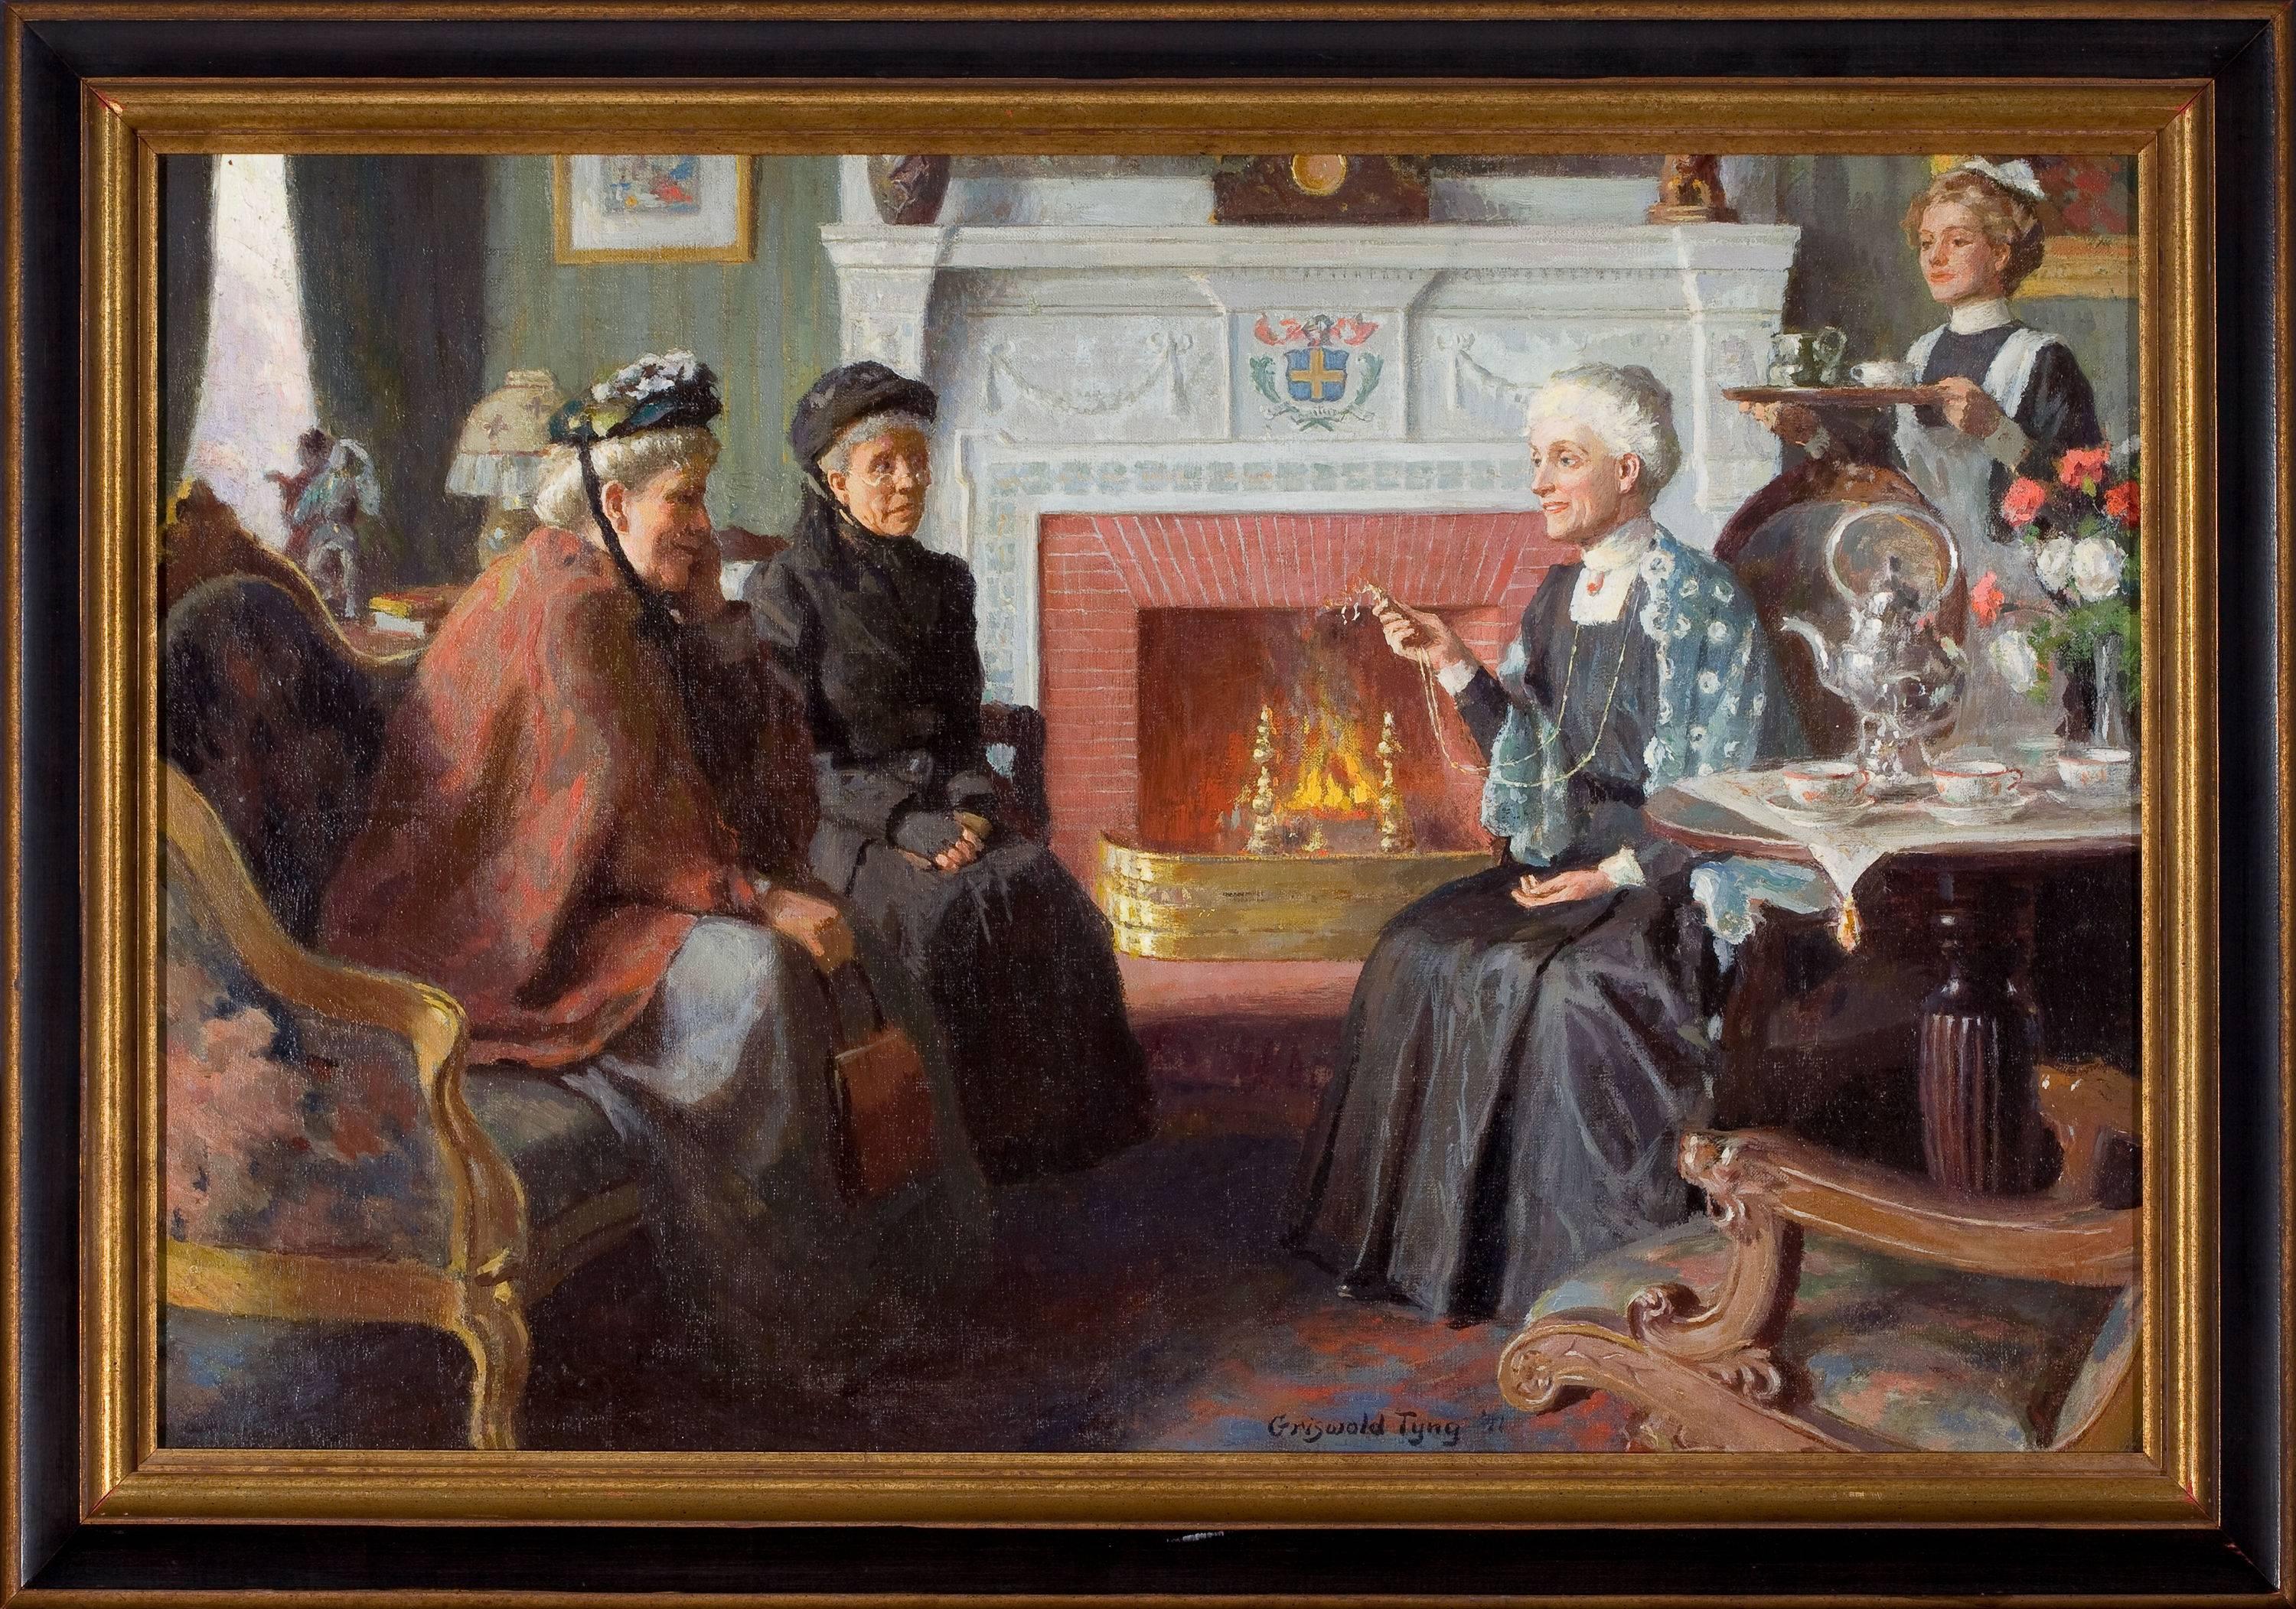 Szene im Wohnzimmer – Painting von Griswold Tyng